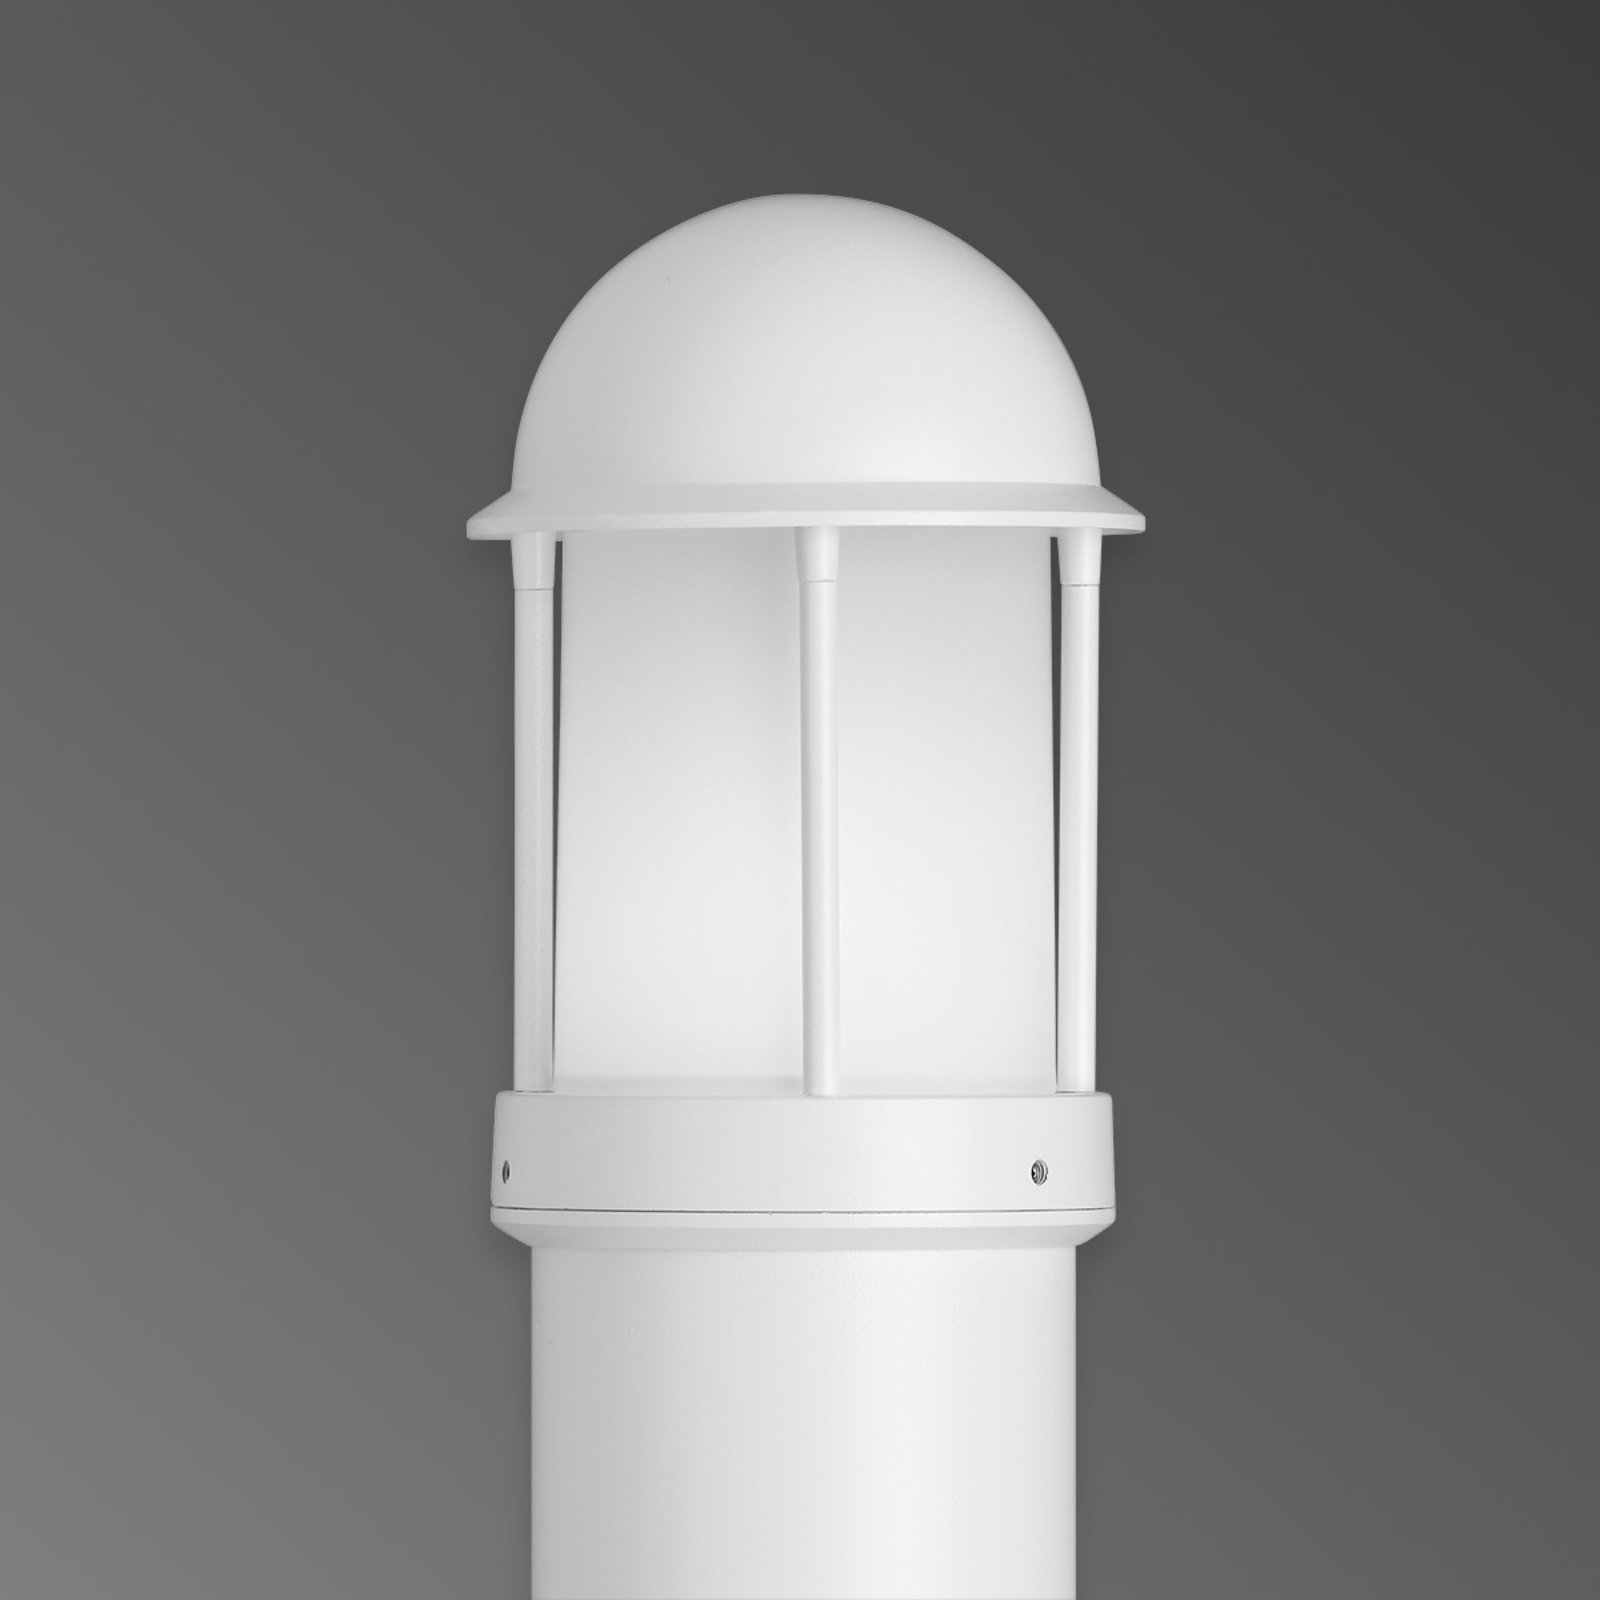 Gatelampe Marco av aluminium, hvit